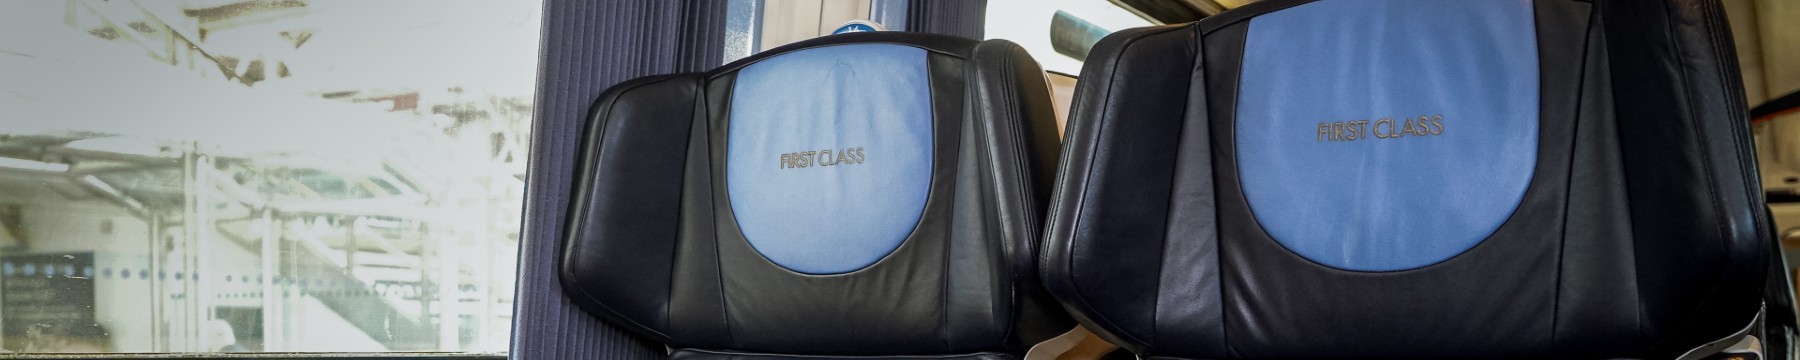 First Class seats